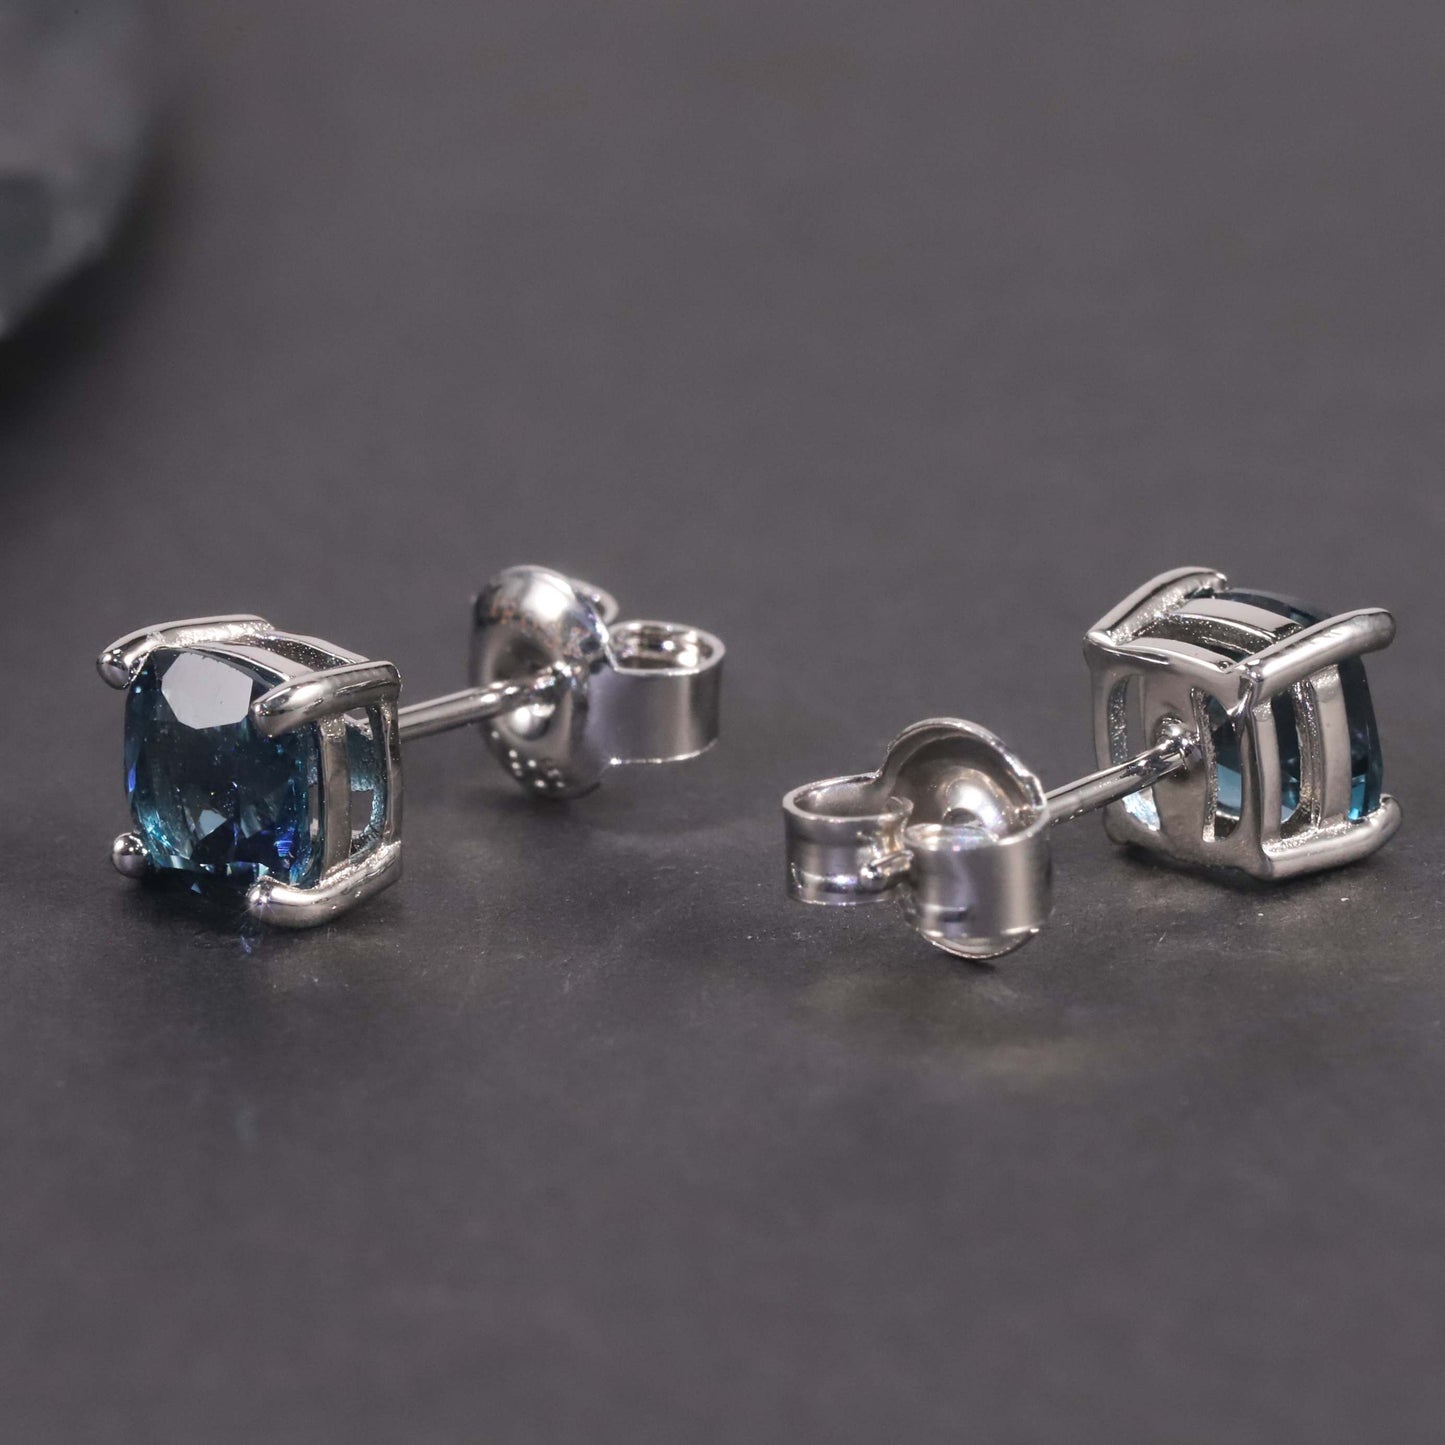 Cushion Cut Stud Earrings in Sterling Silver -  London Blue Topaz